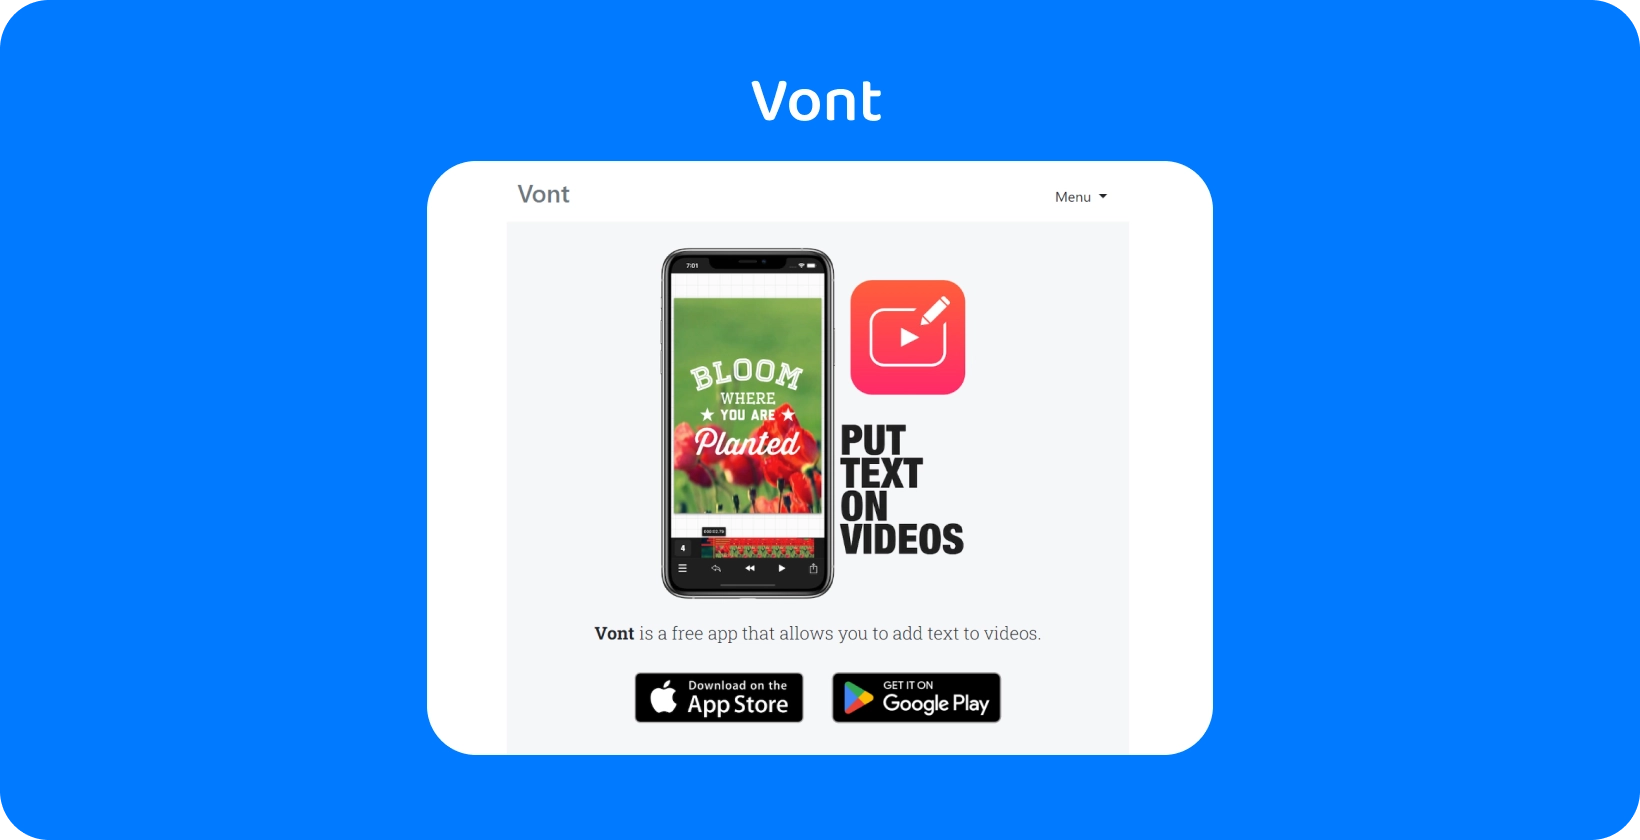 Pametni telefon koji prikazuje sučelje Vont aplikacije, naglašavajući njegovu značajku za dodavanje teksta na videozapise, dostupnog na App Store i Google Play